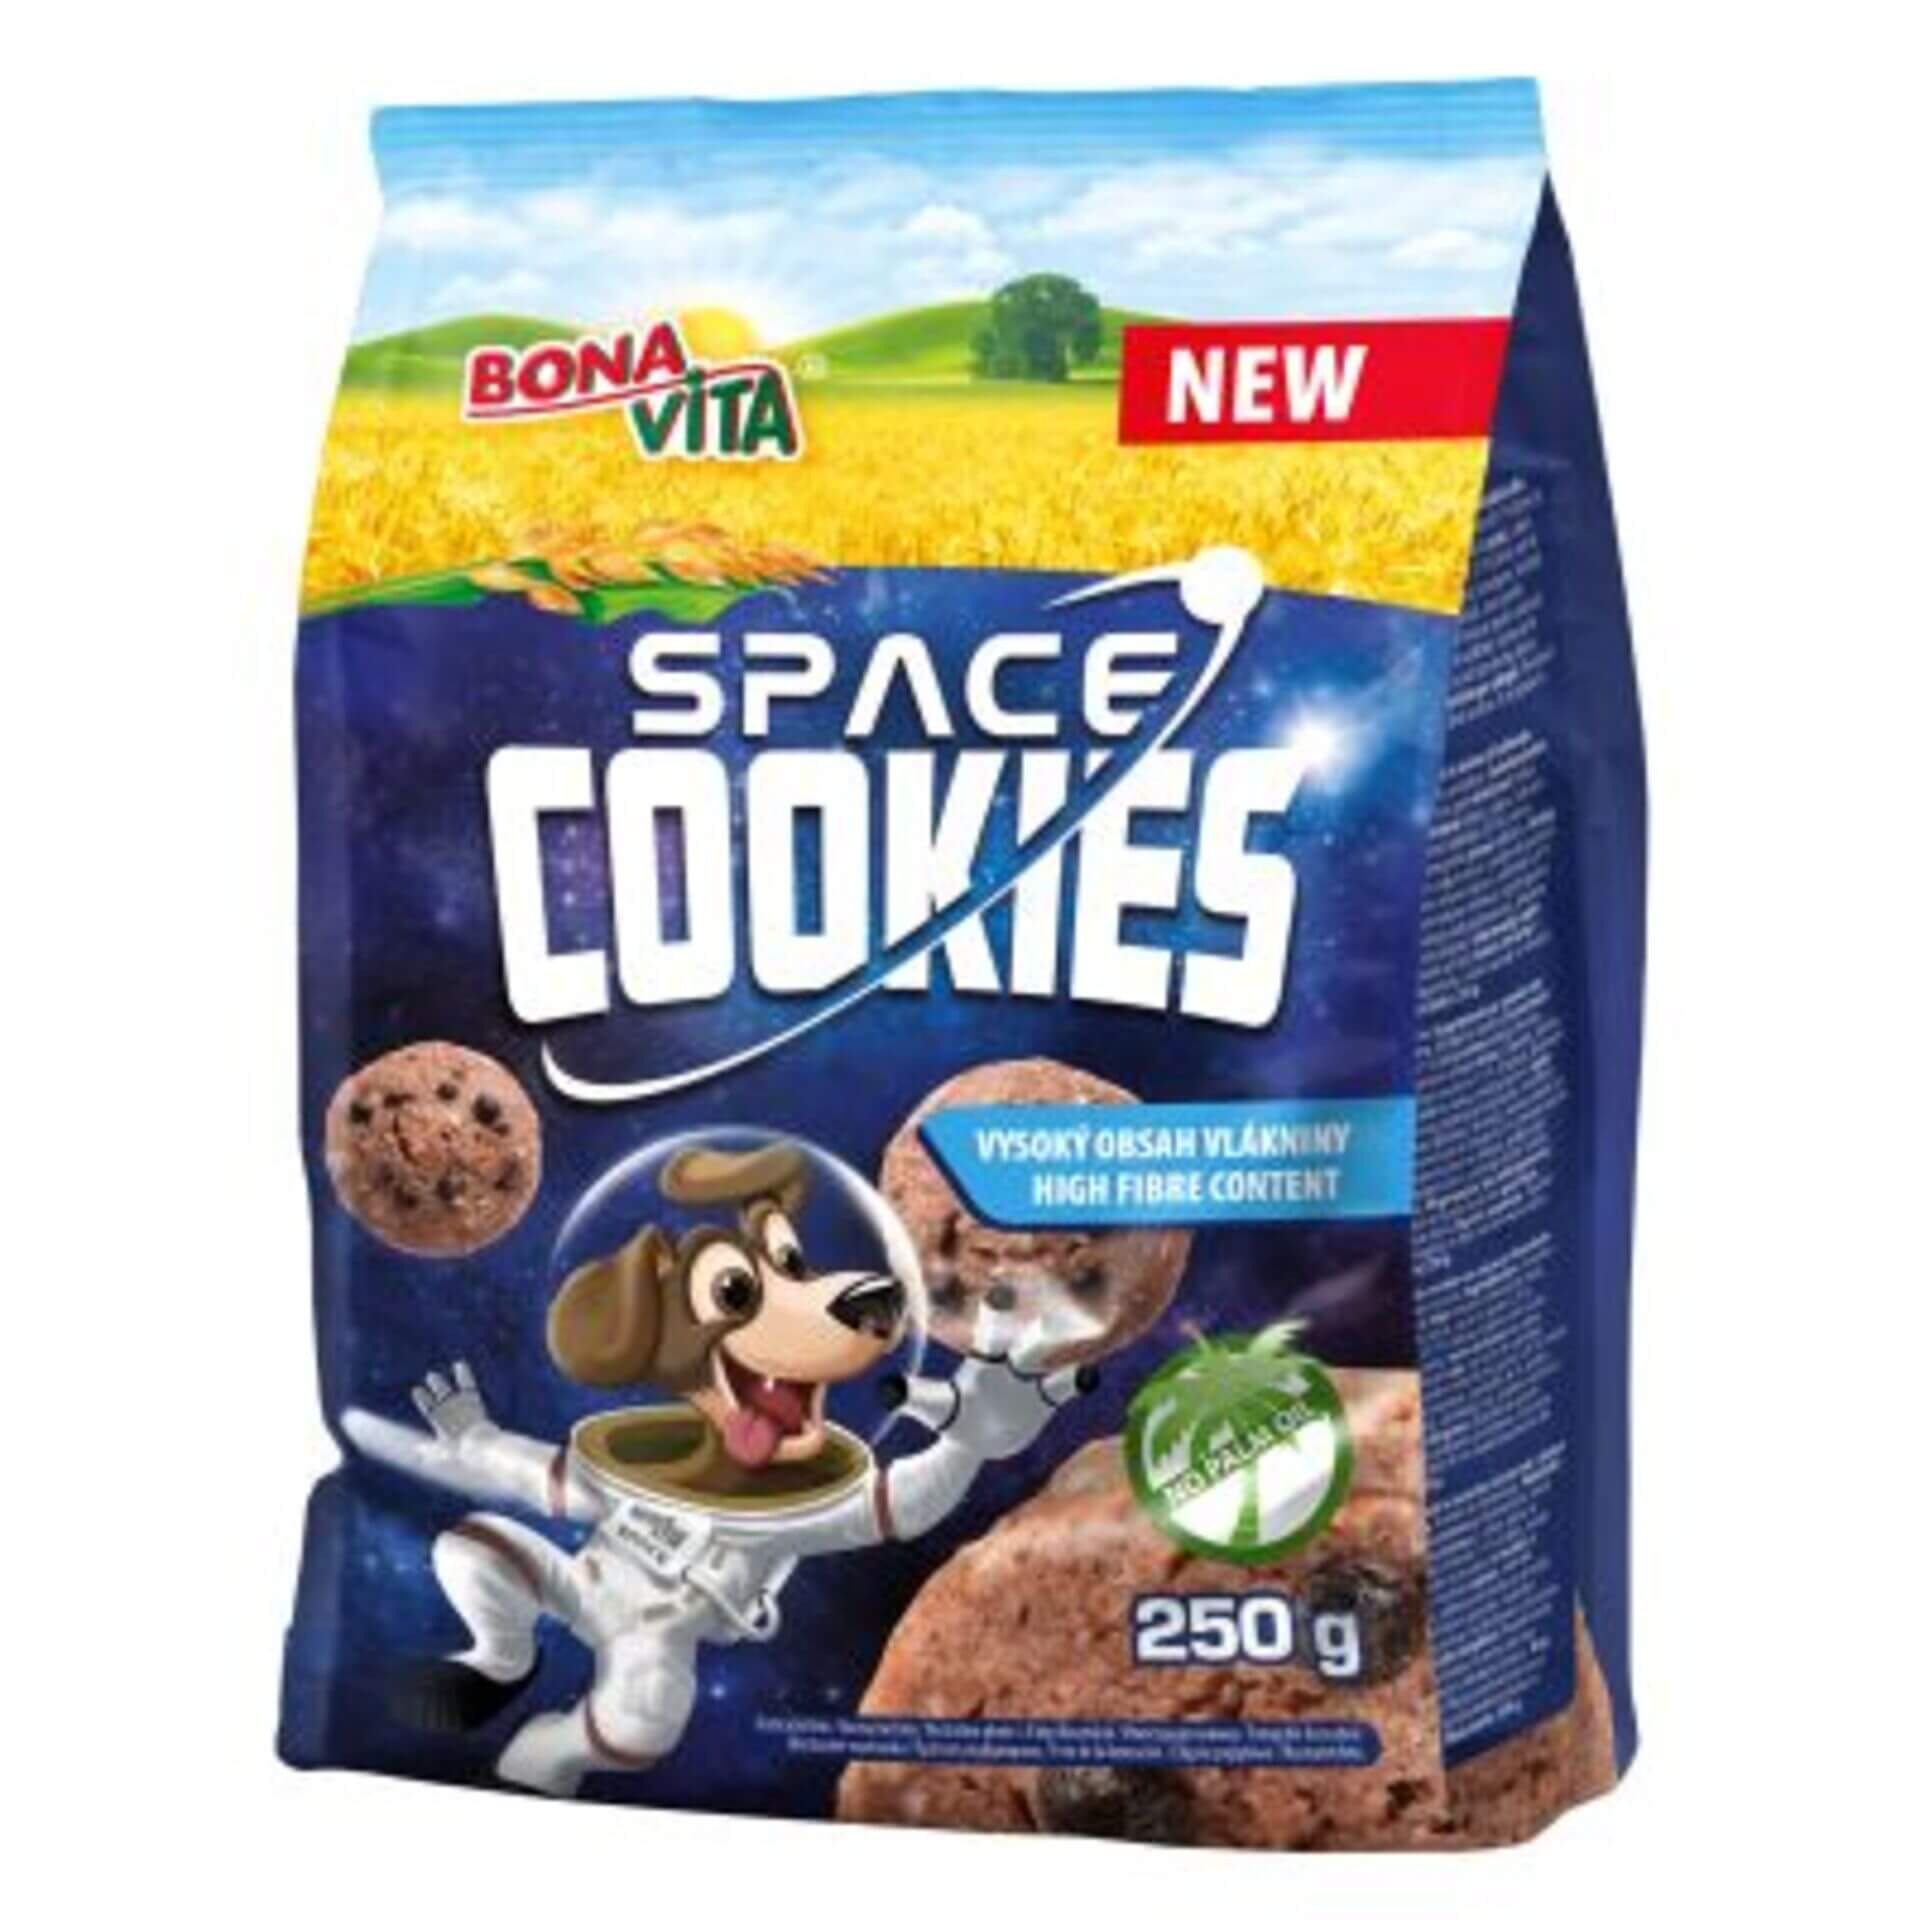 E-shop Bonavita Detské cereálie Space cookies 250 g